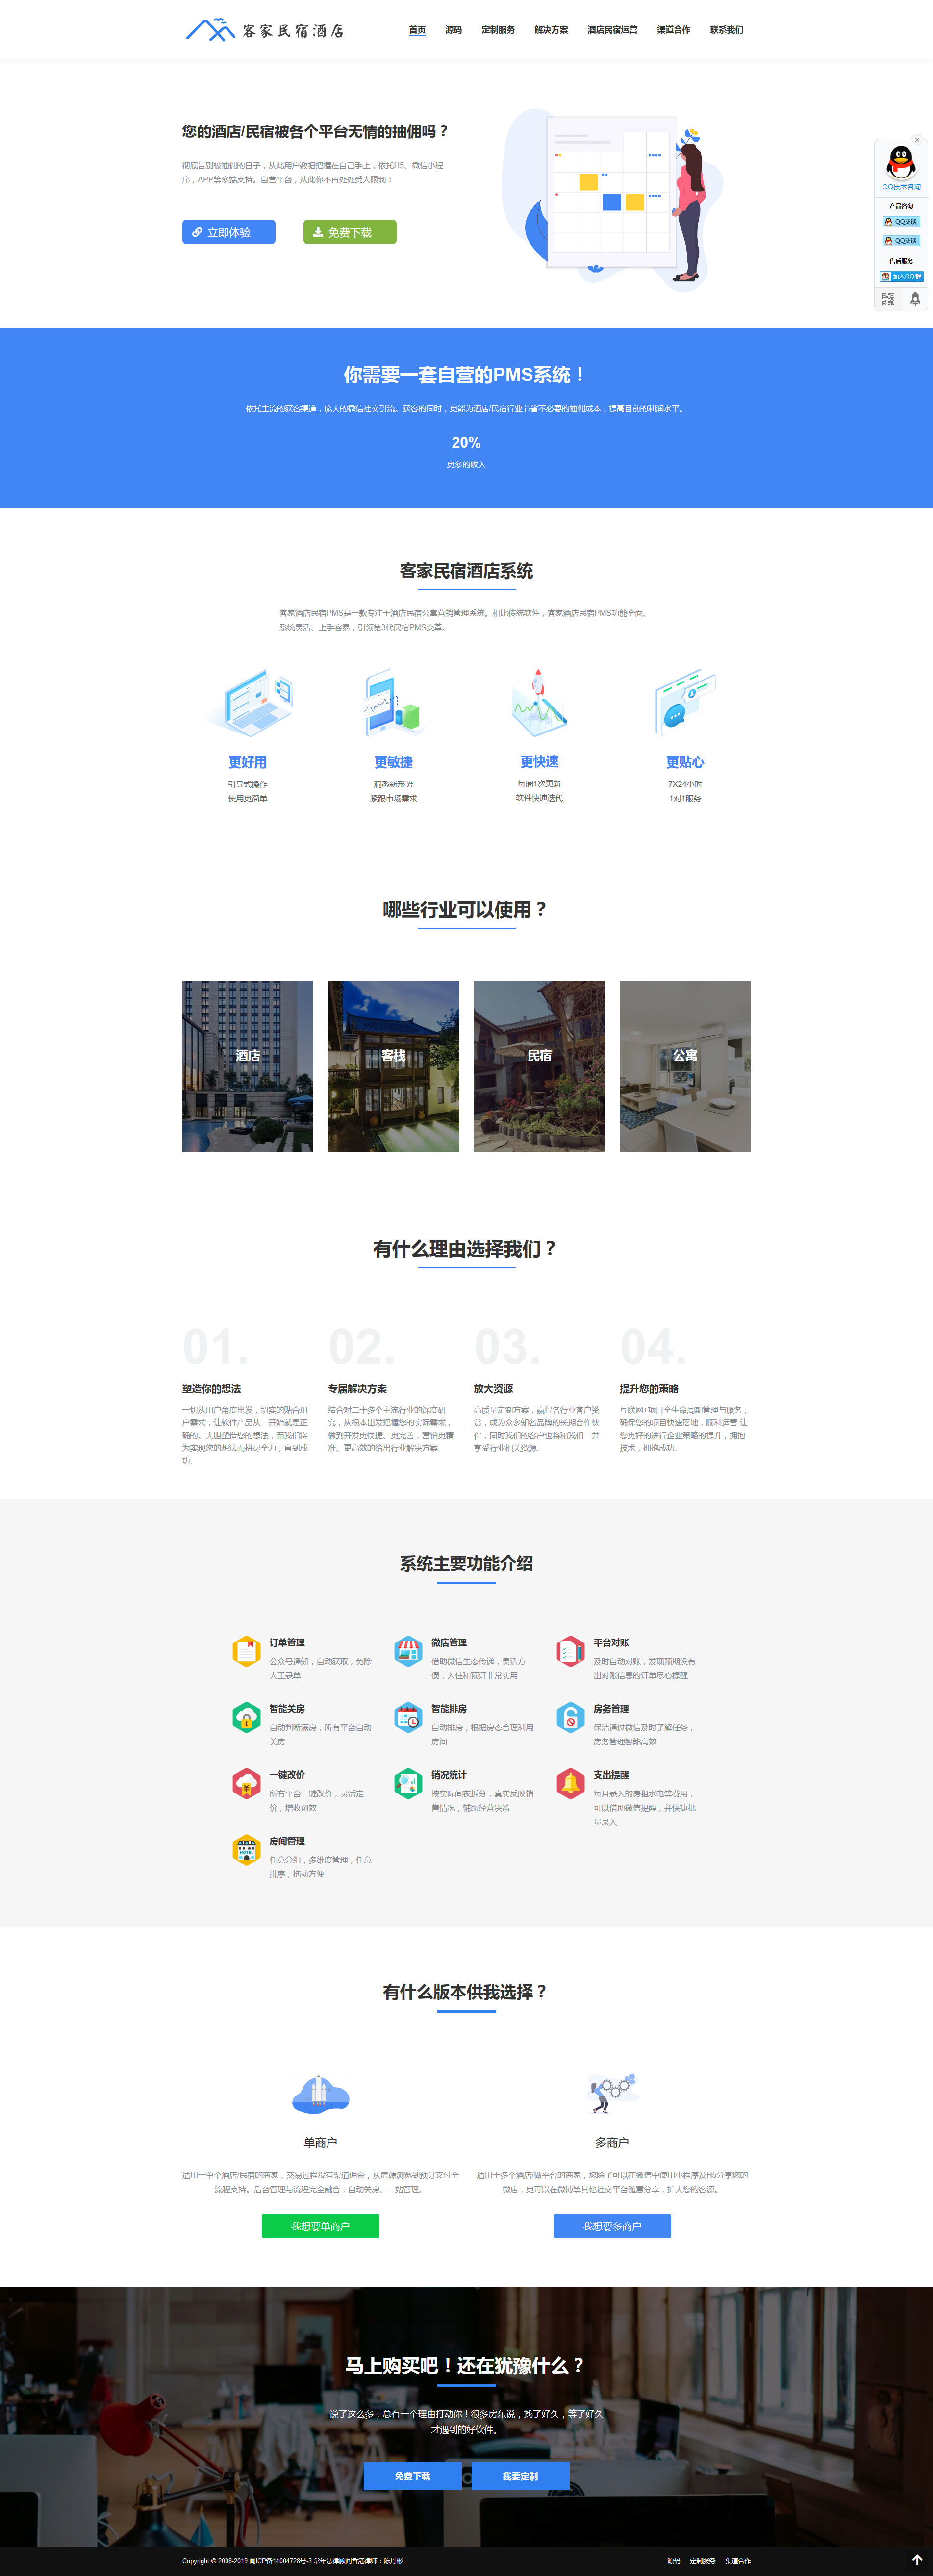 免费开源芊雅民宿酒店系统 – 自营软件-芊雅企服